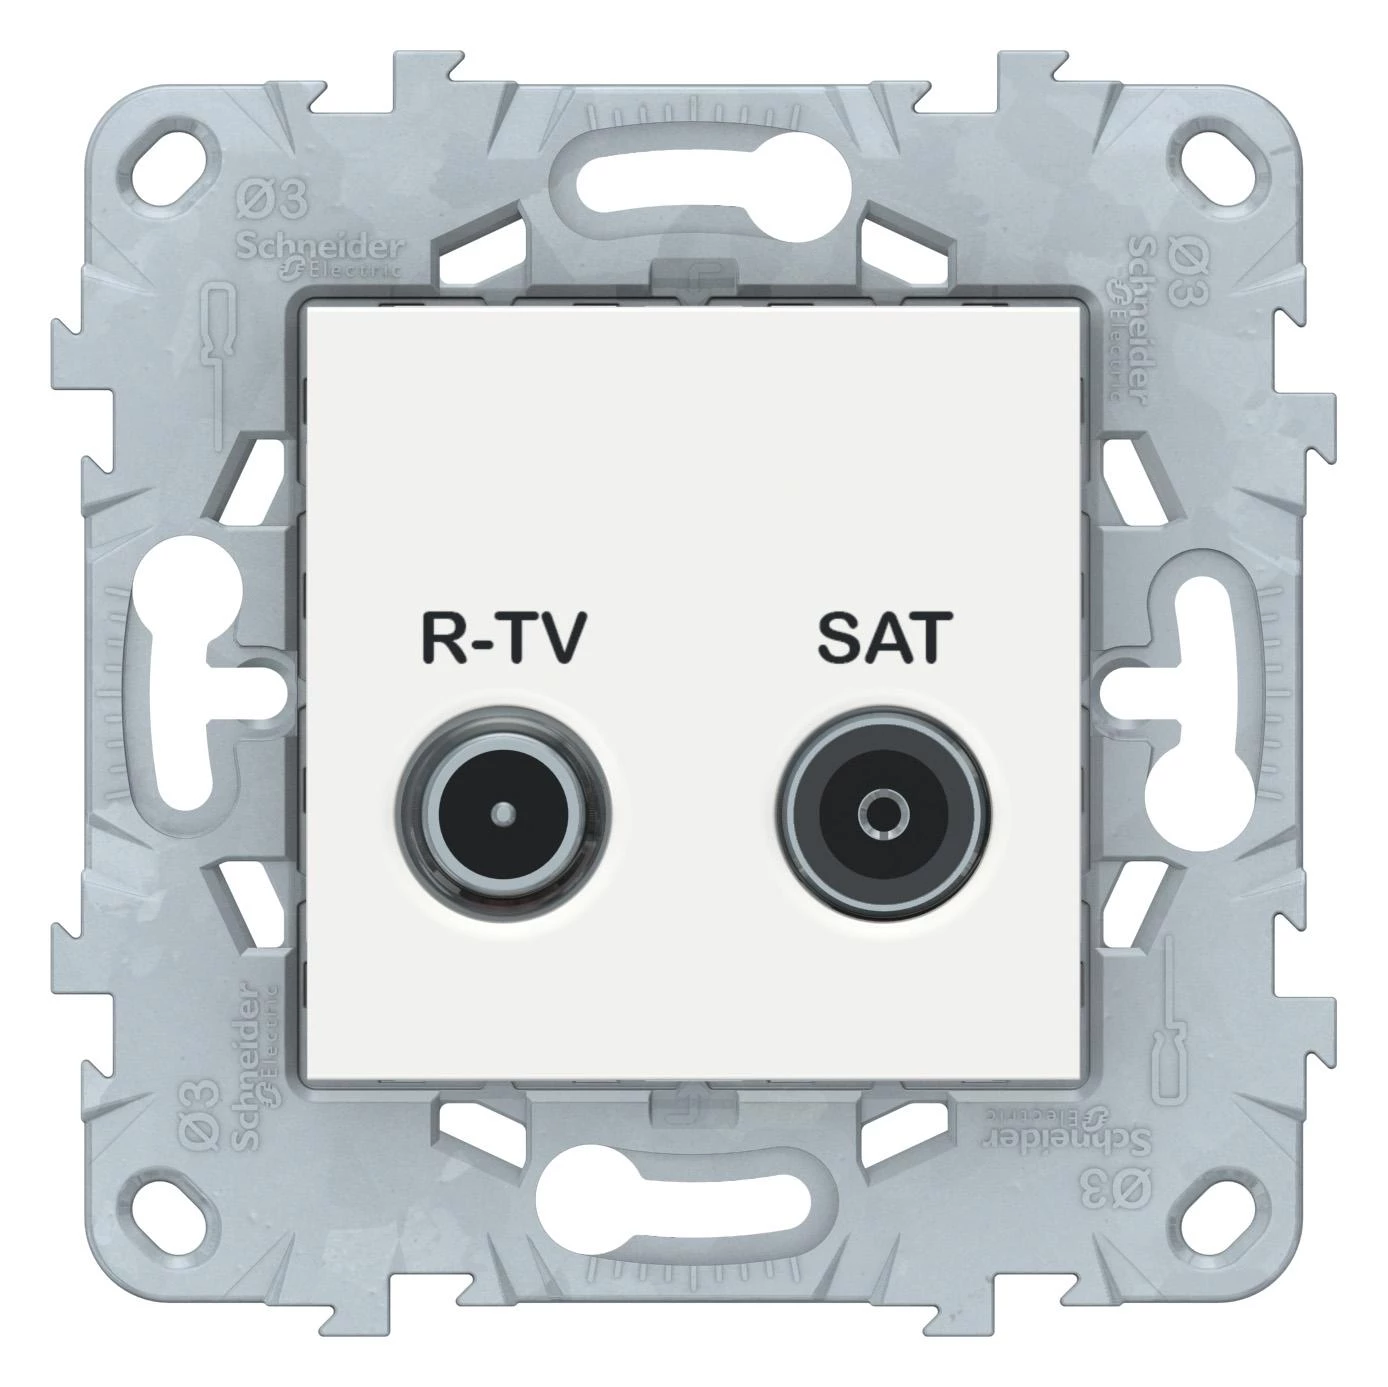  артикул NU545418 название Розетка телевизионная единственная ТV-SAT , Белый, серия Unica New, Schneider Electric